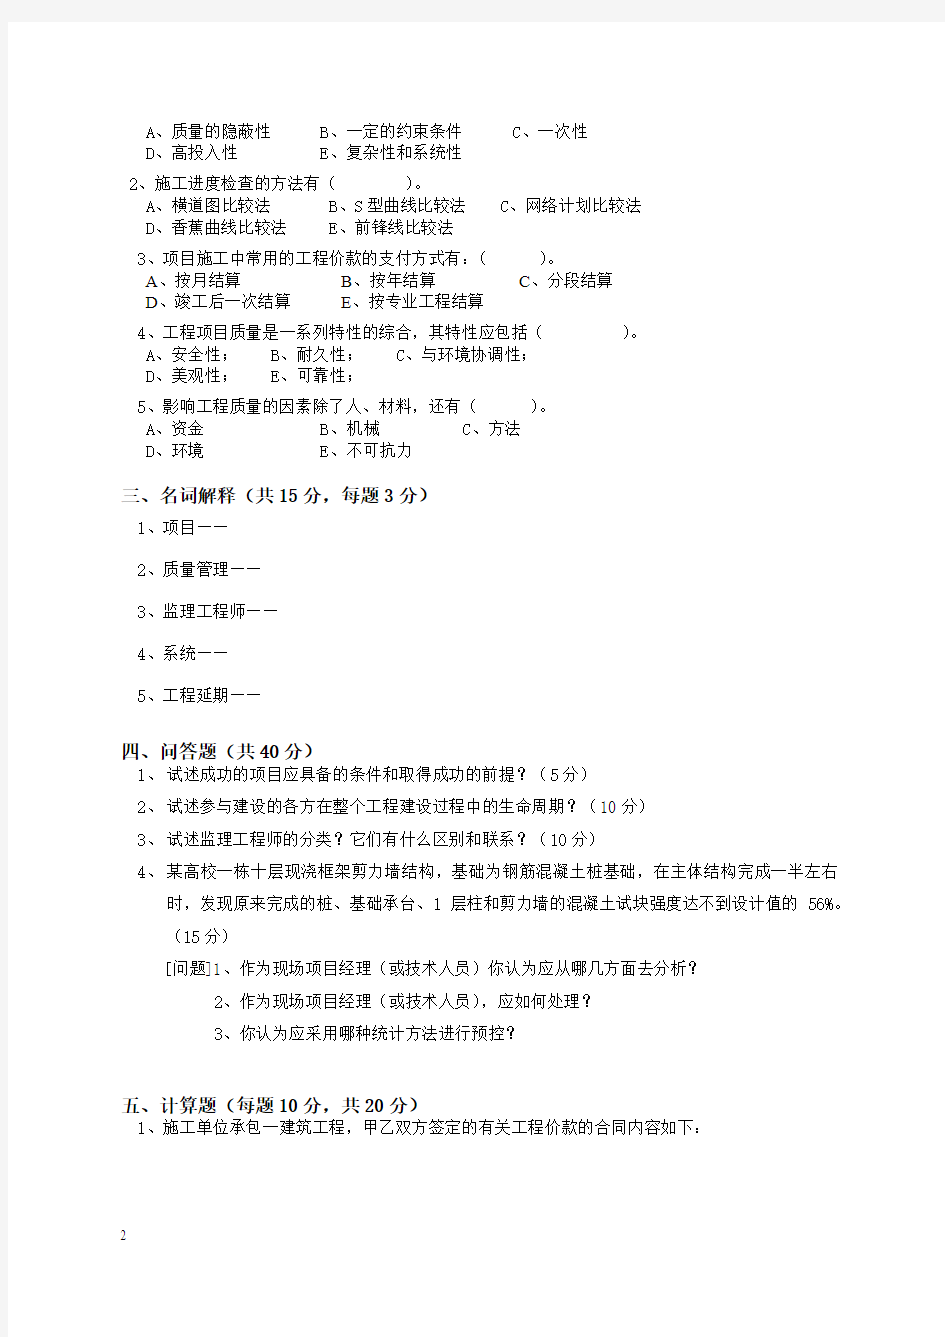 试卷2-华中科技大学-工程项目管理